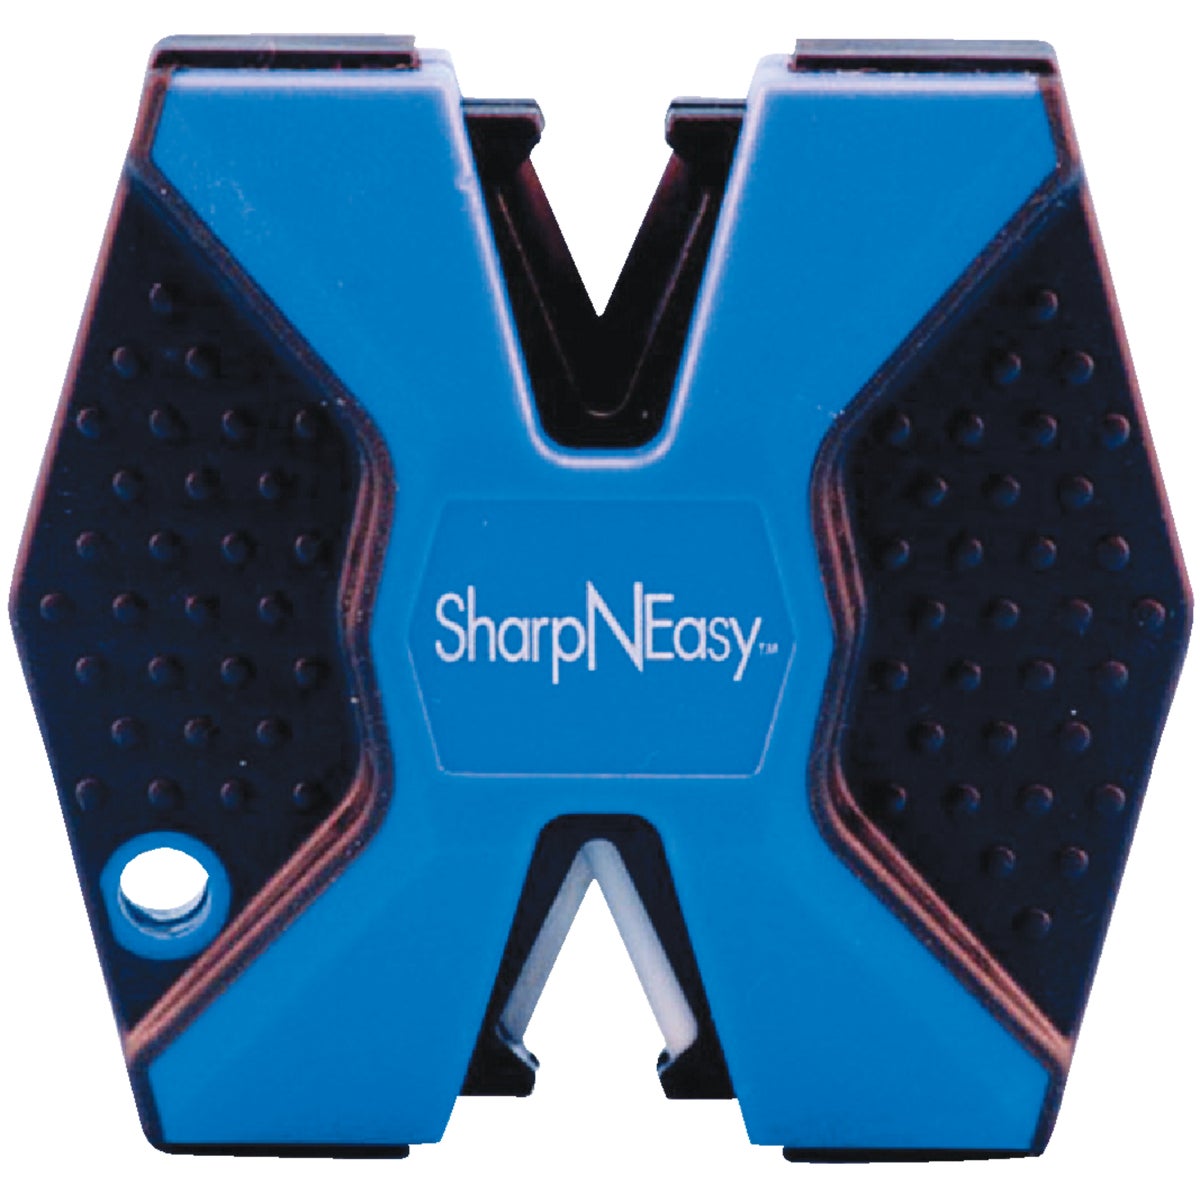 AccuSharp Sharp'N Easy 2-Step Ceramic Knife Sharpener